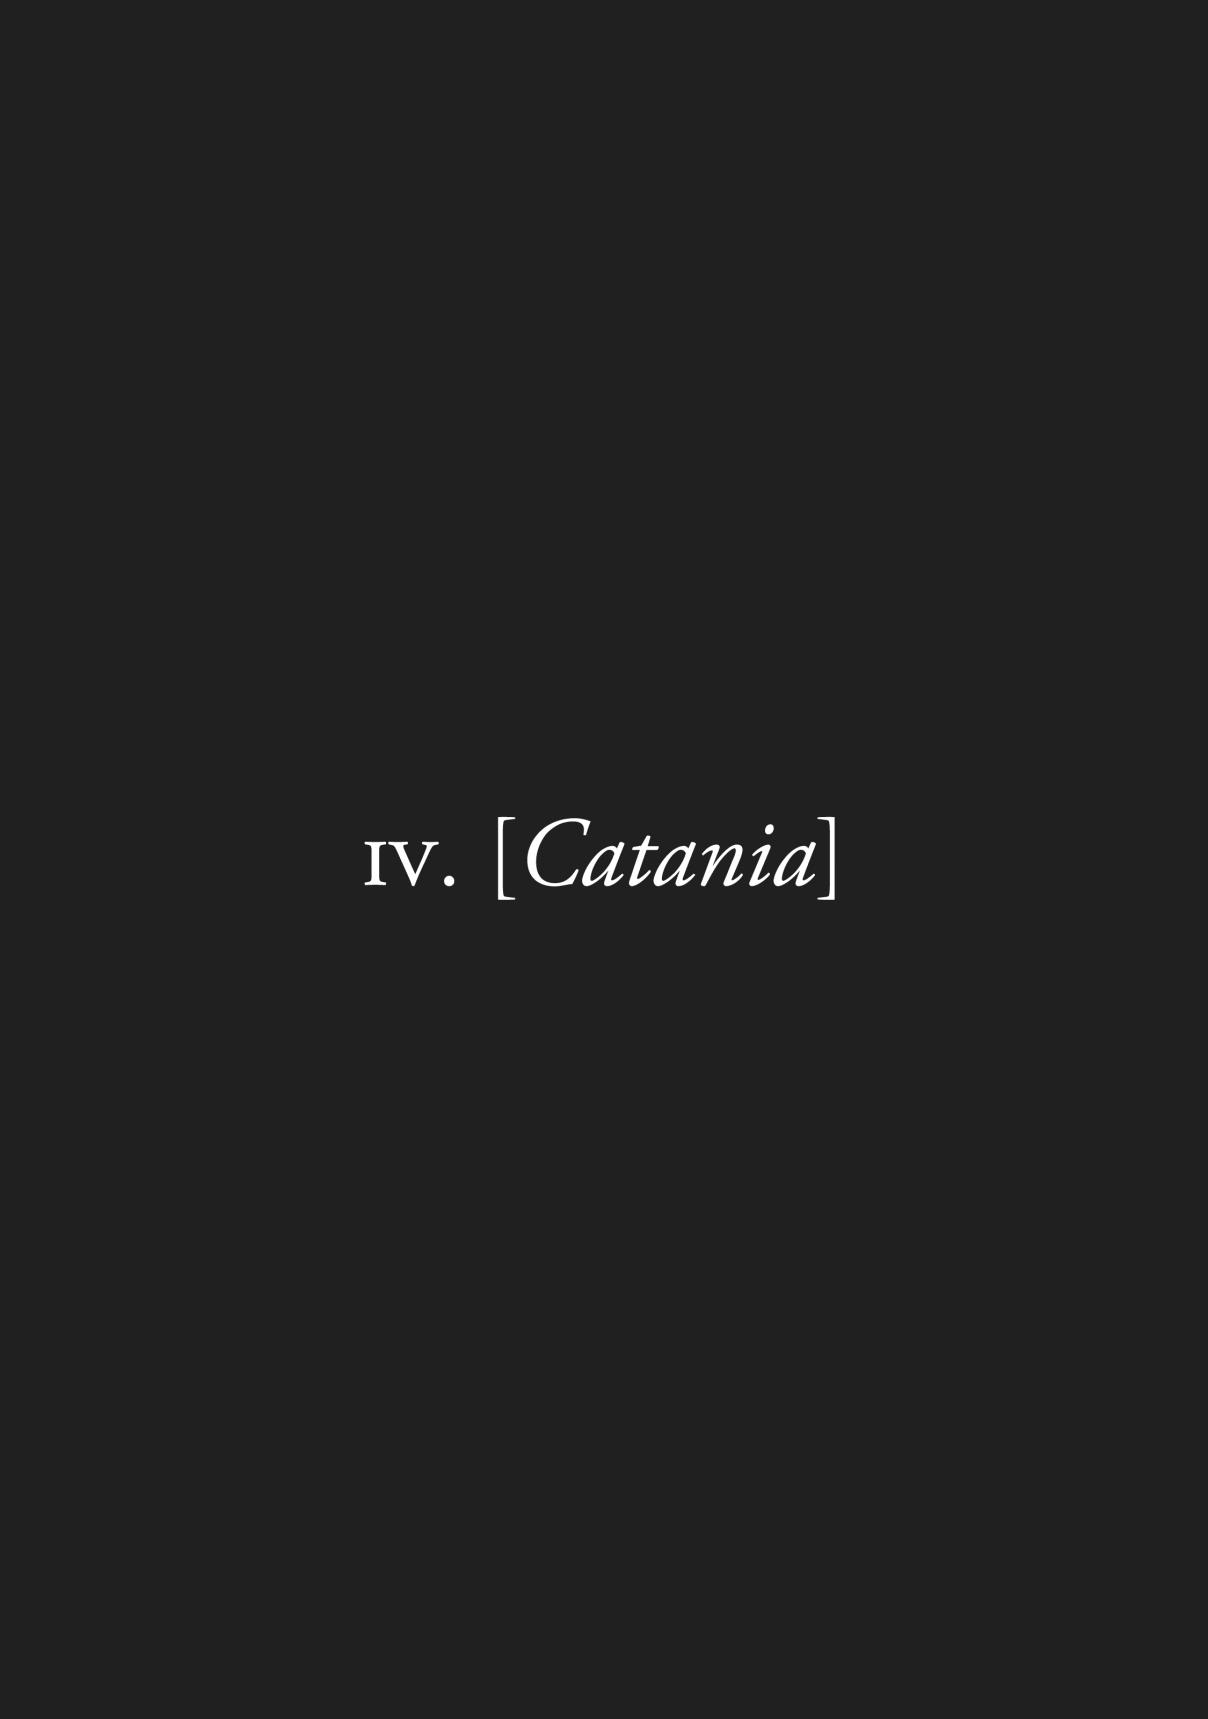 Plinivs Vol. 1 Ch. 4 Catania